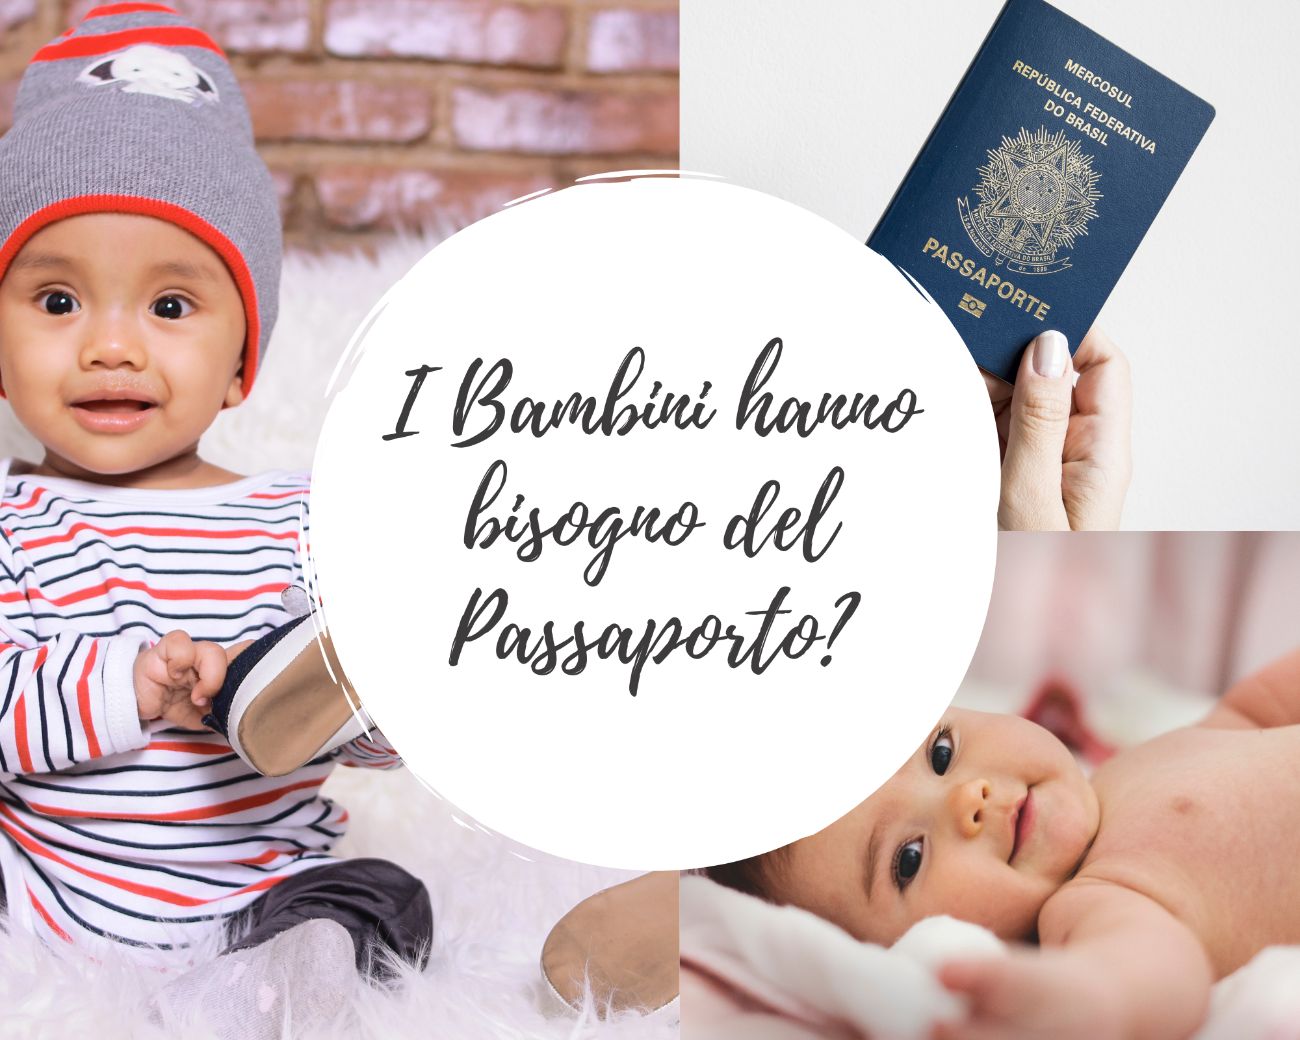 I Bambini hanno bisogno del Passaporto?